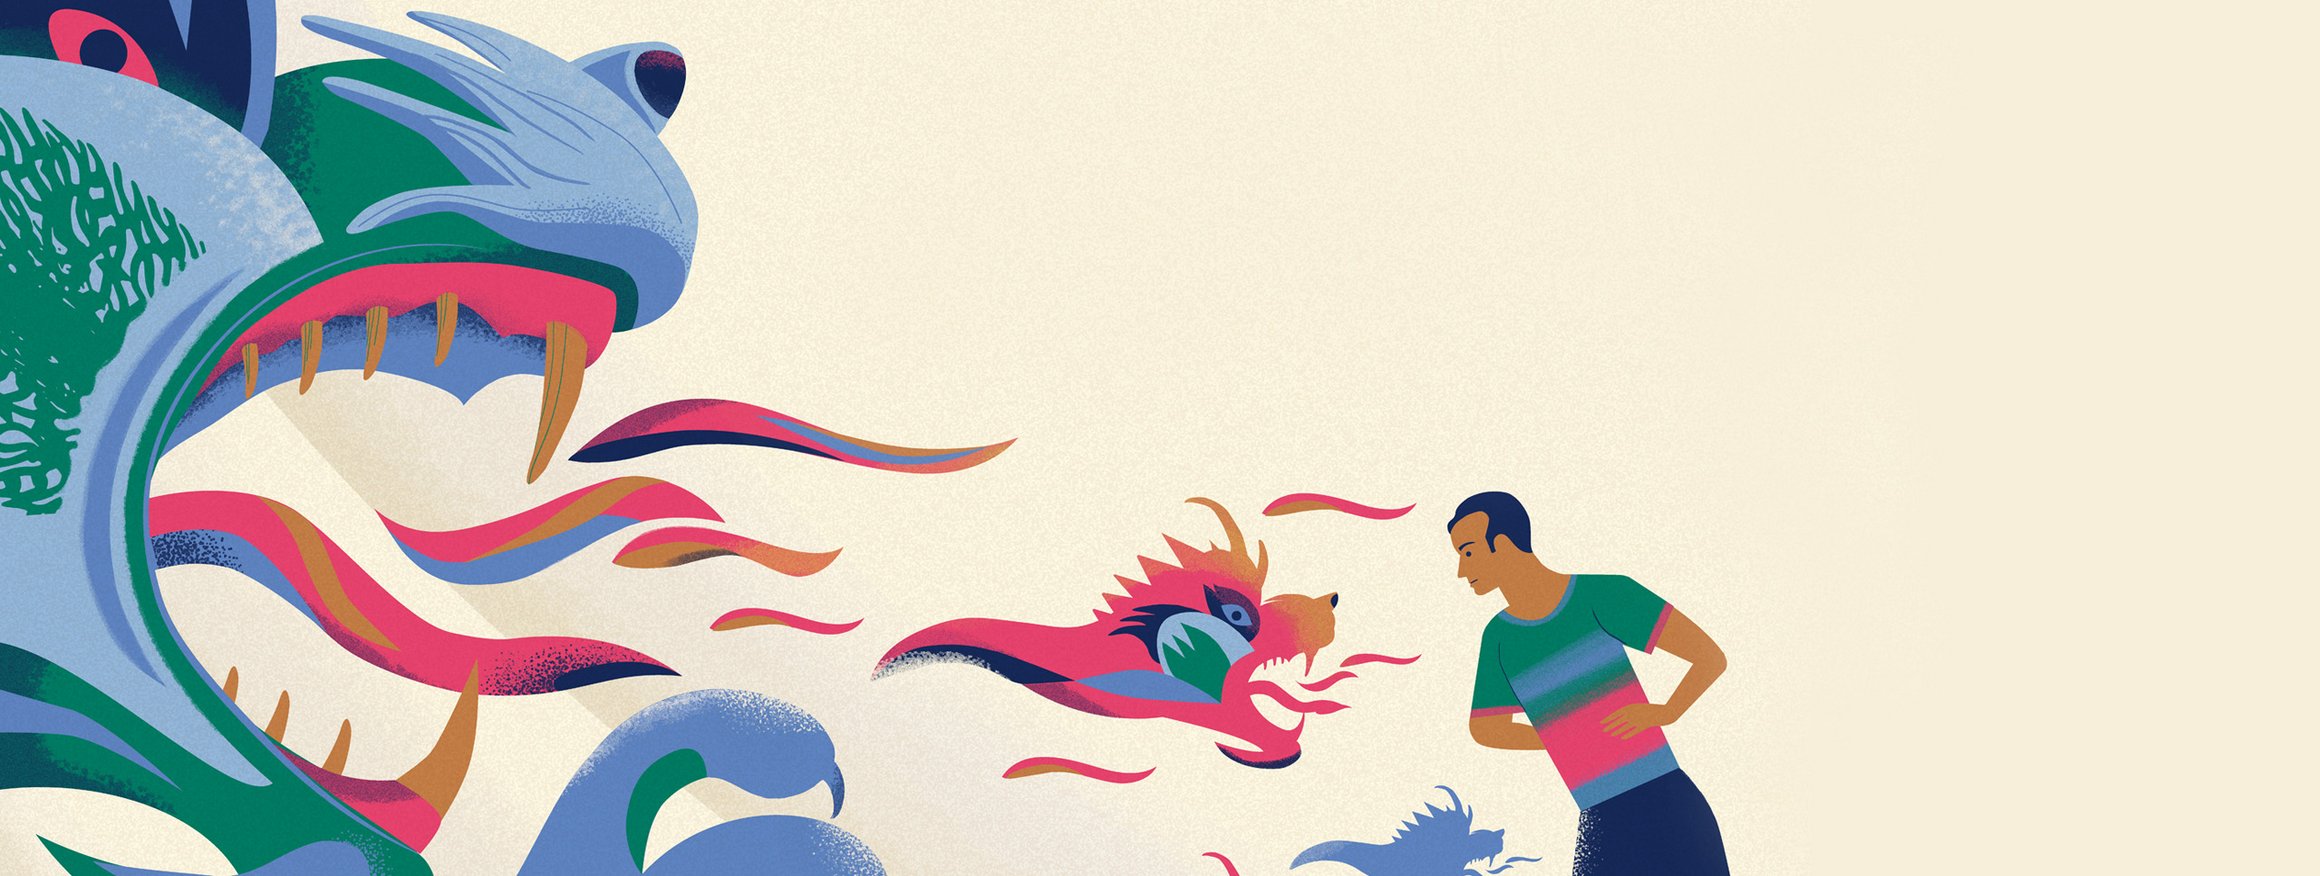 Die Illustration zeigt einen jungen Mann, der sich gegen bedrohliche Drachen stellt.